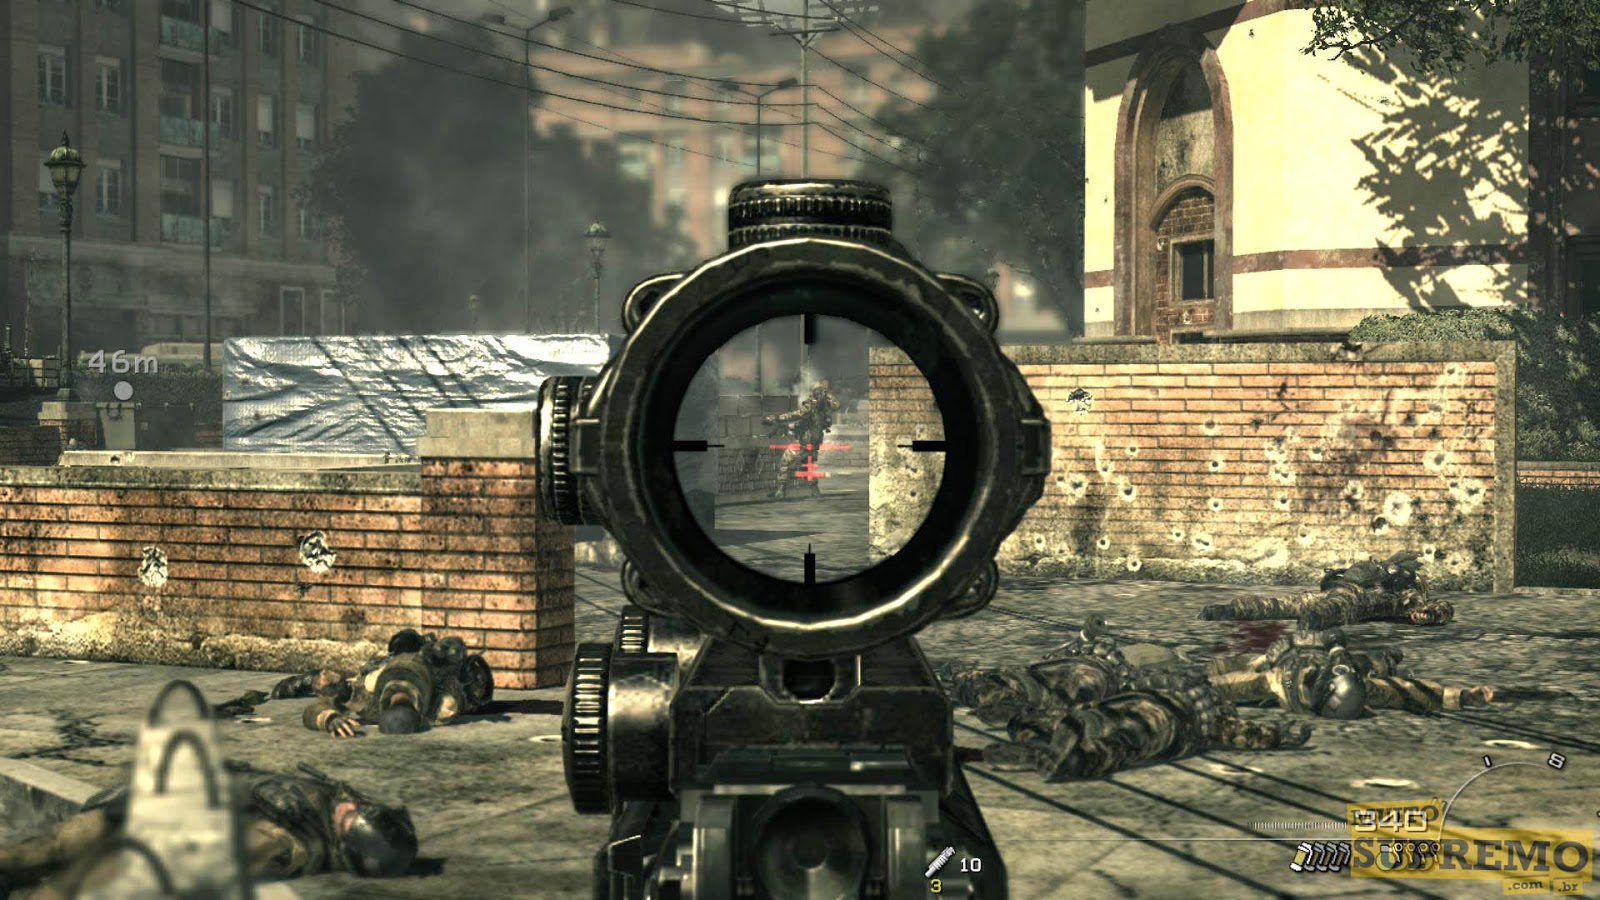 Бесплатные игры call of duty 3. Call of Duty: Modern Warfare 3. Call of Duty: Modern Warfare 3: Defiance. Call of Duty mw3. Mw3 сюжет.